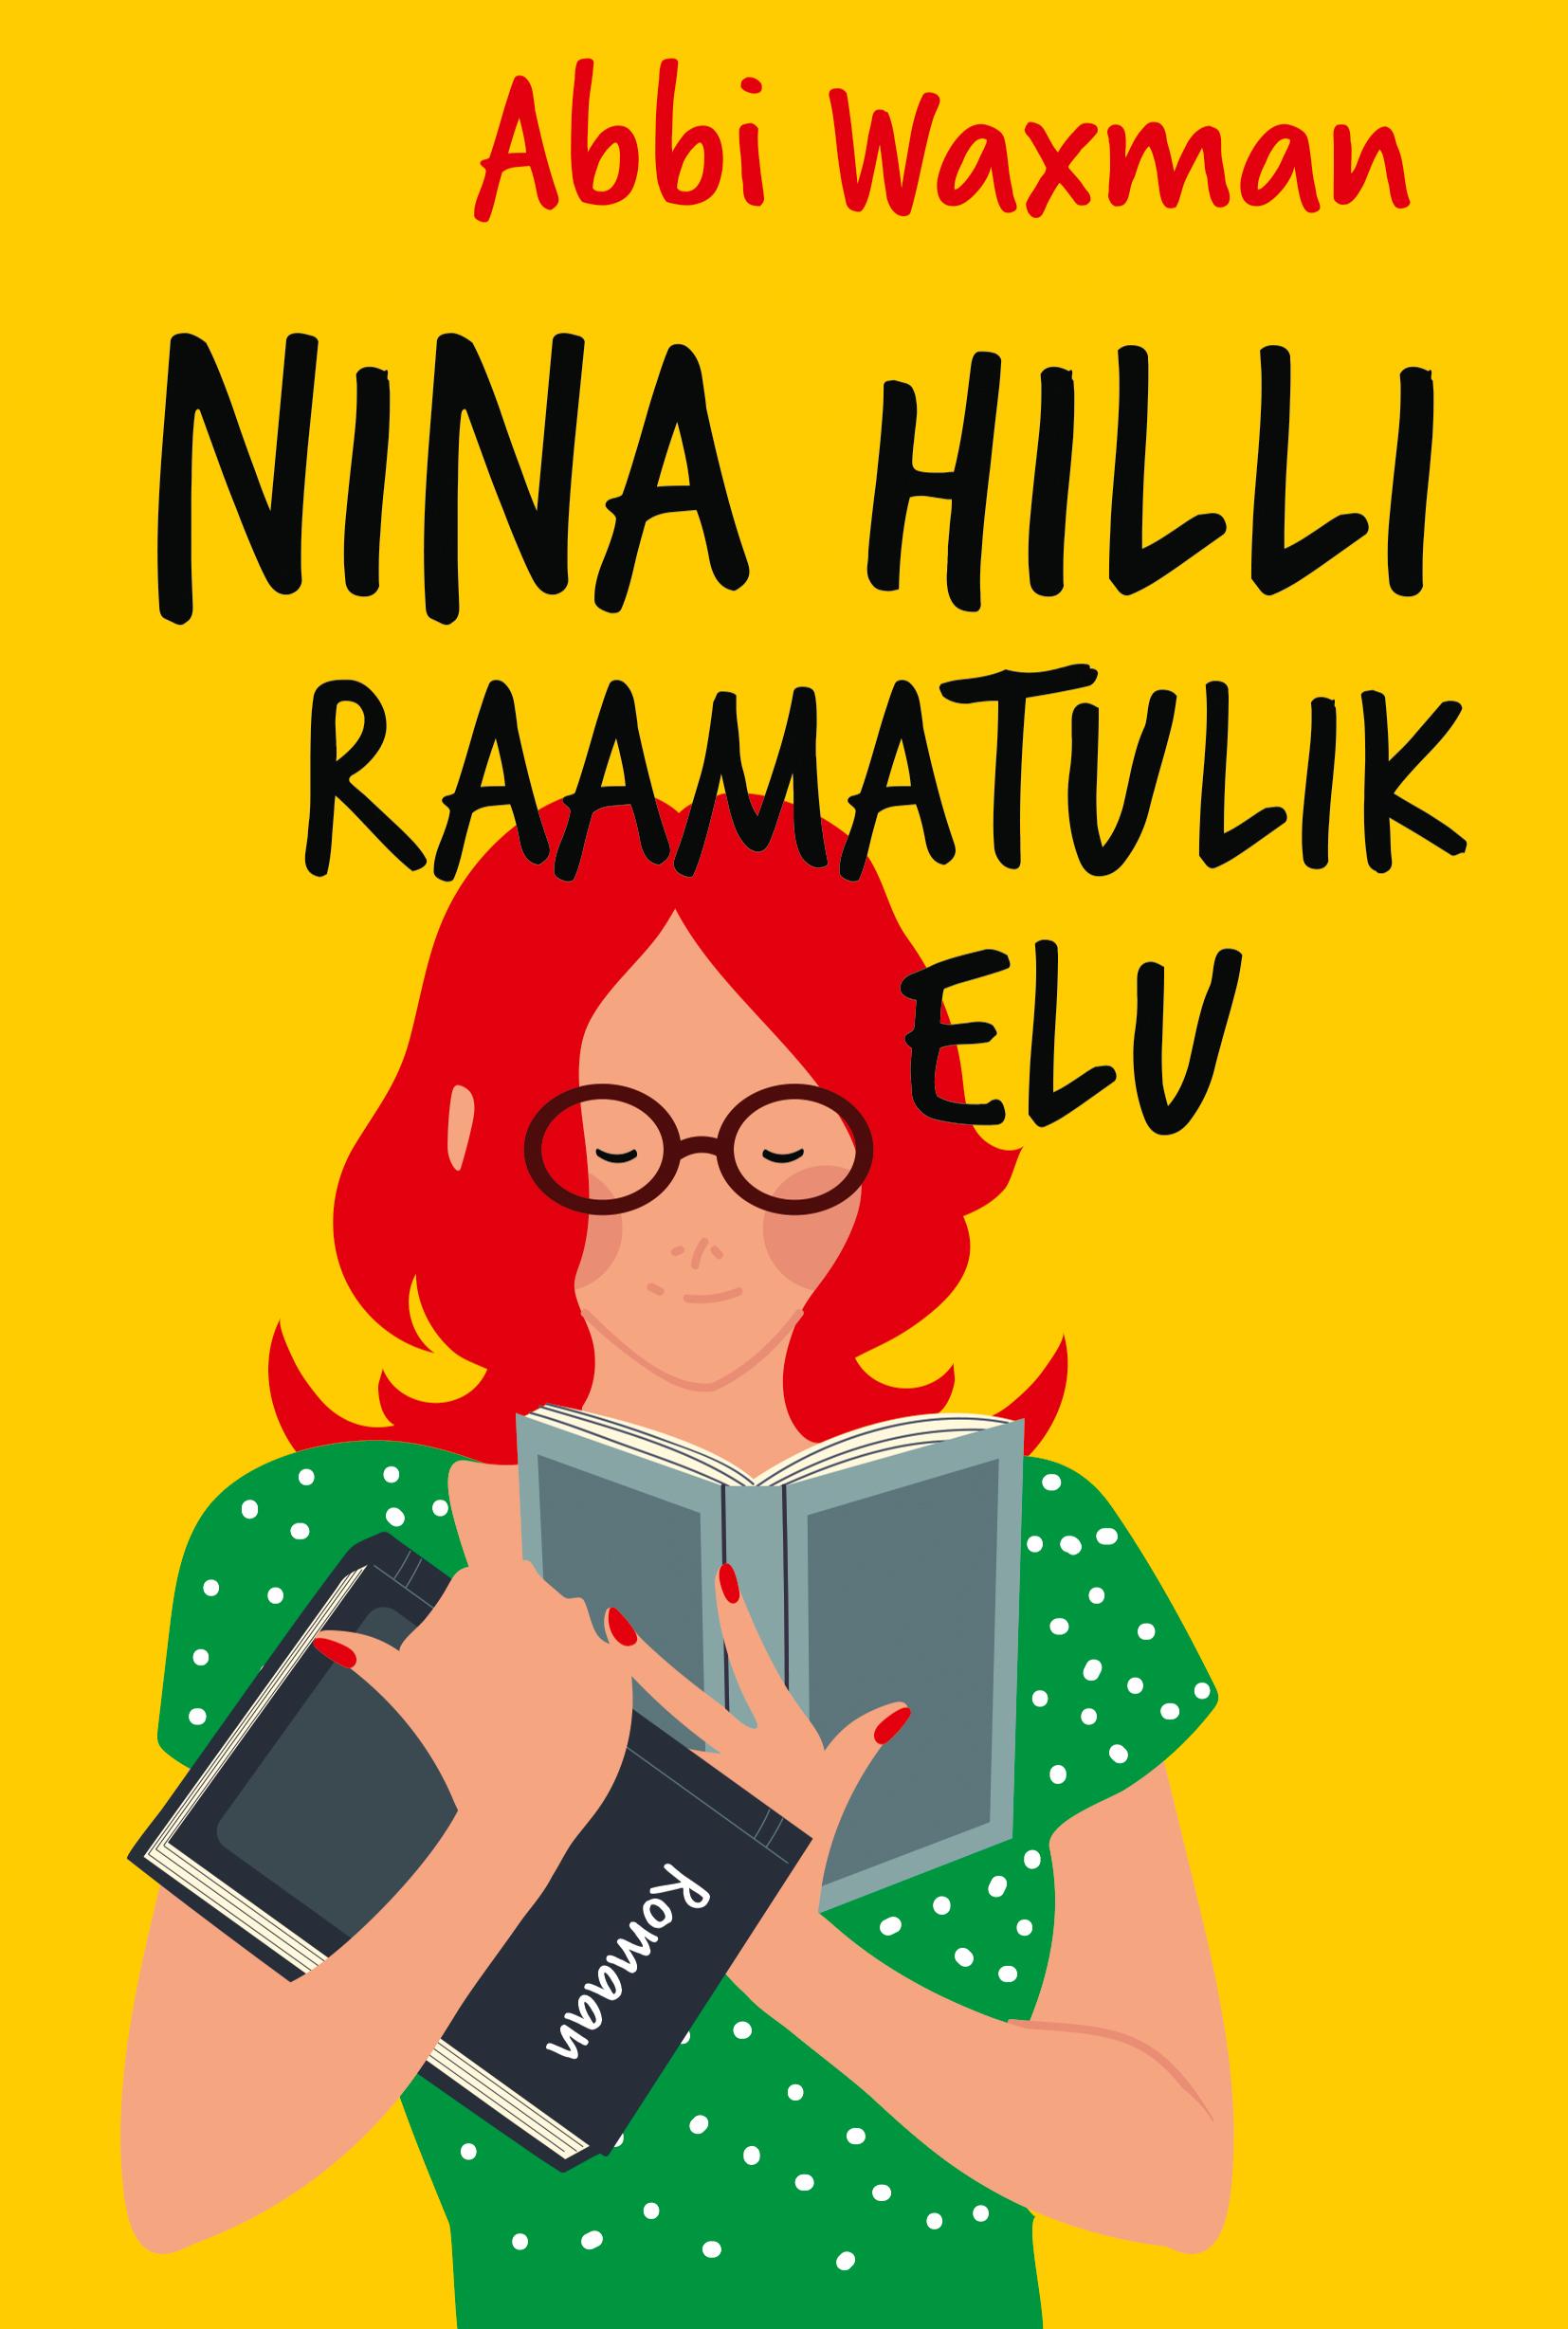 Nina Hilli raamatulik elu